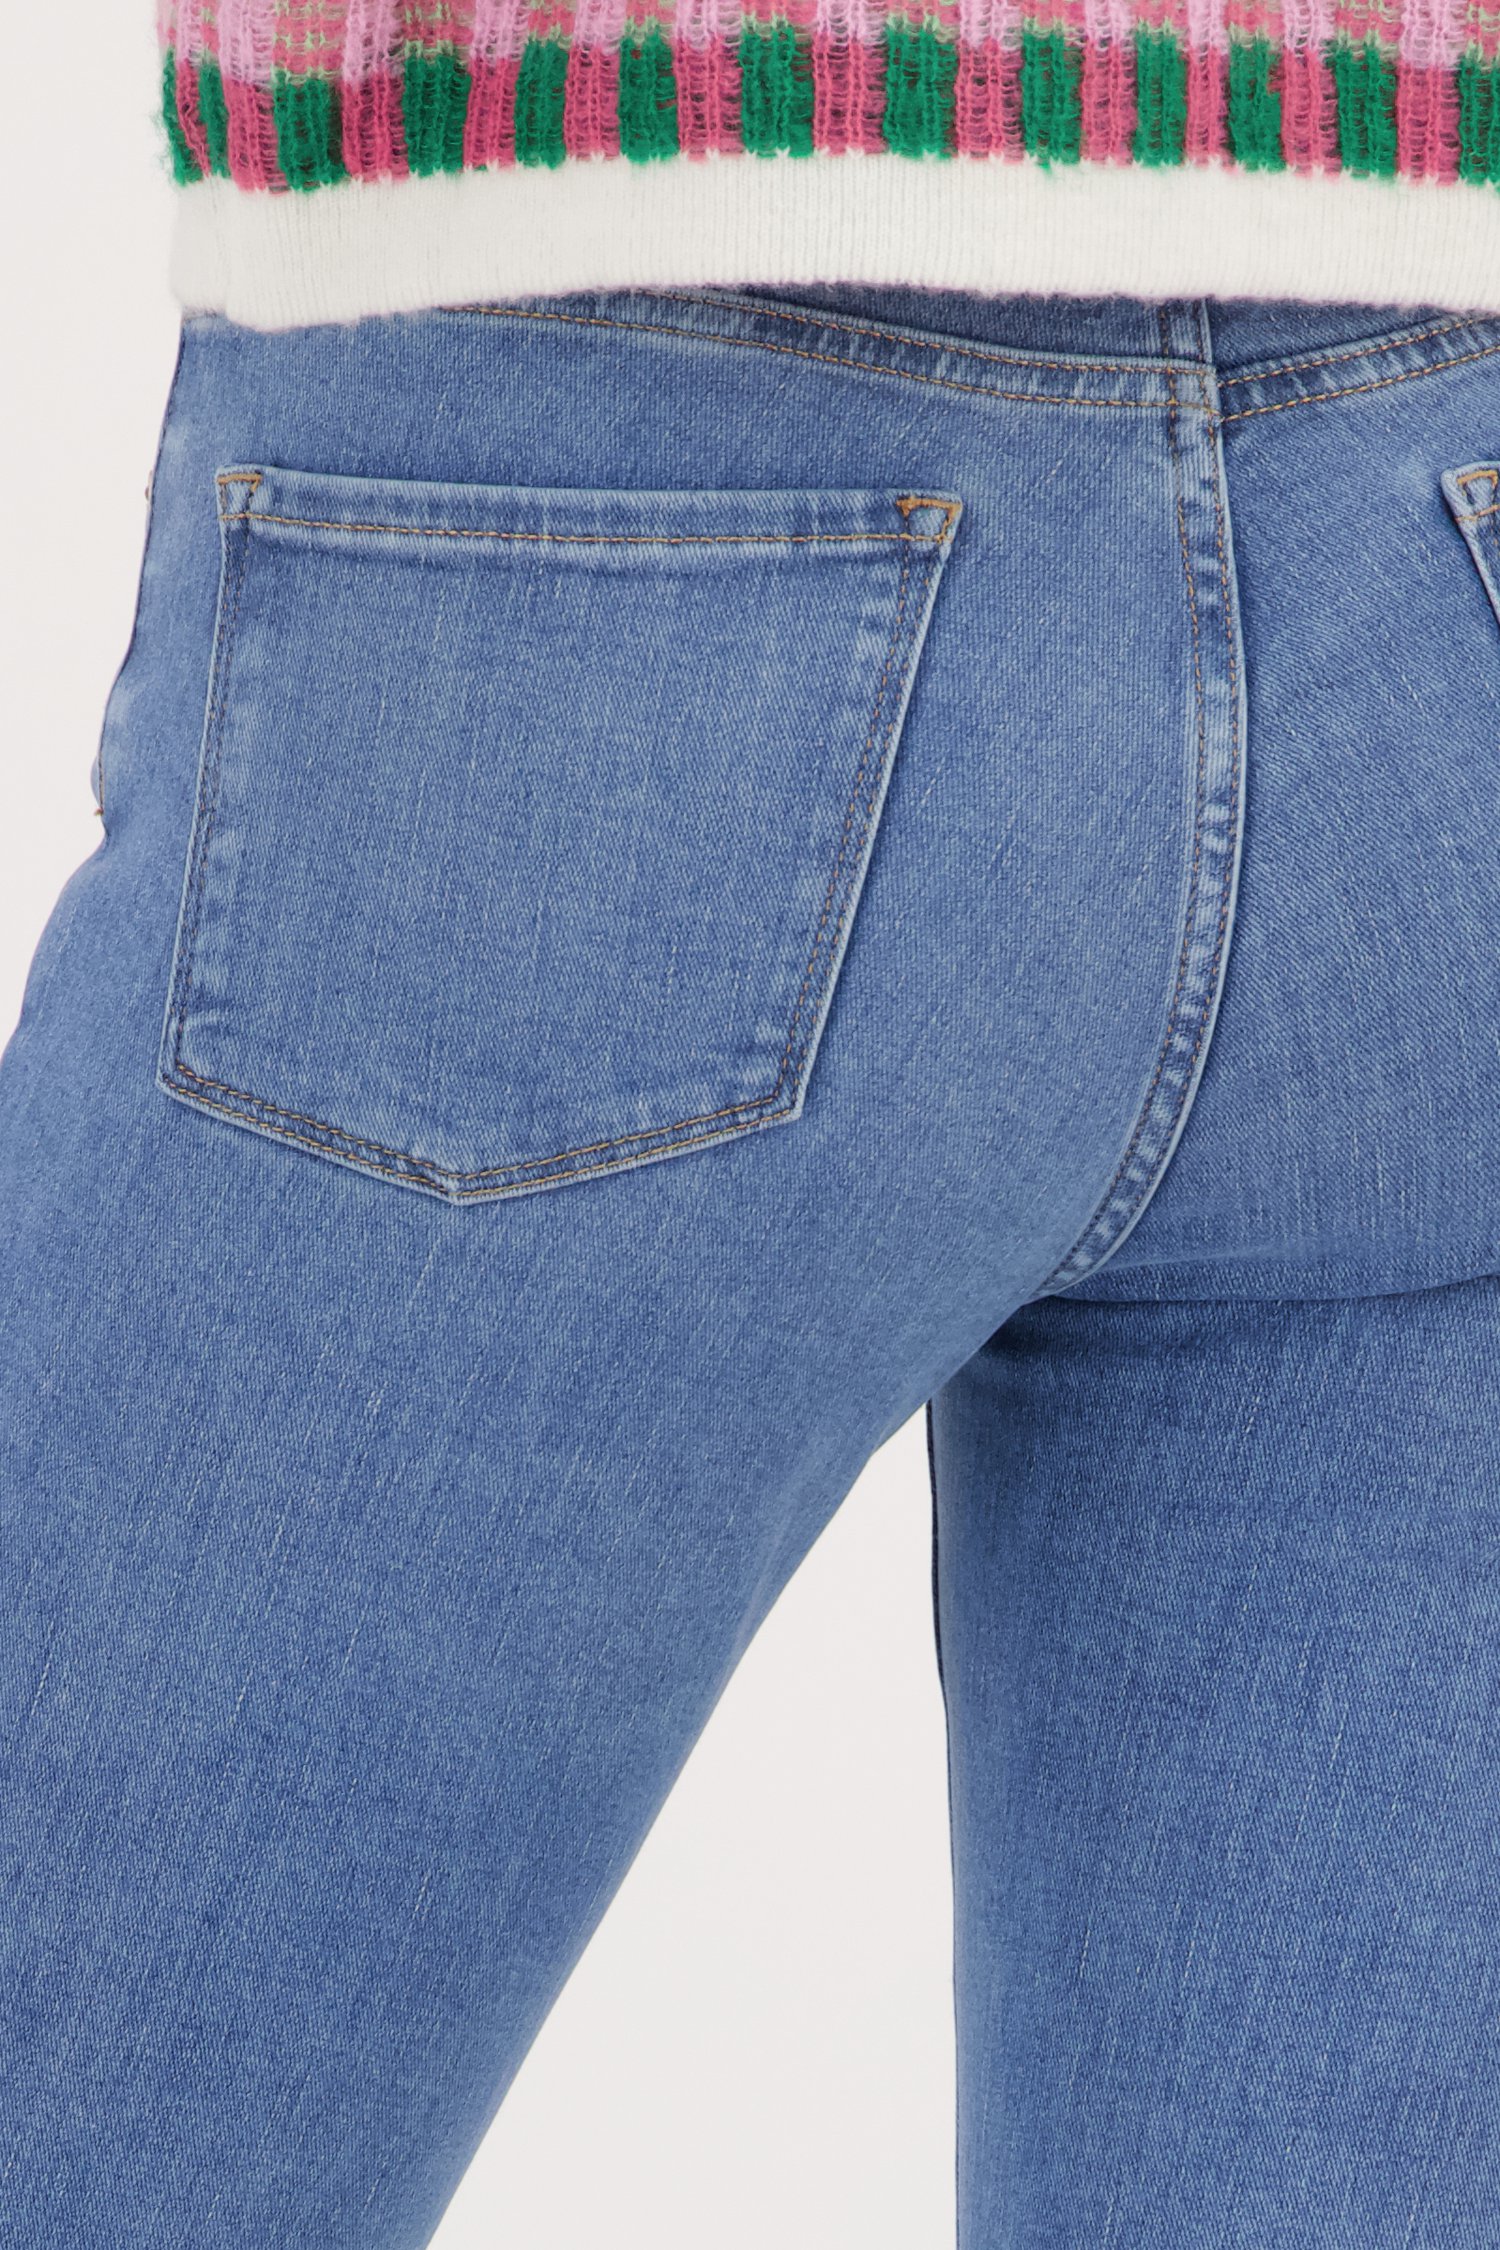 Blauwe jeans - Elma - Skinny - L30 van Opus voor Dames